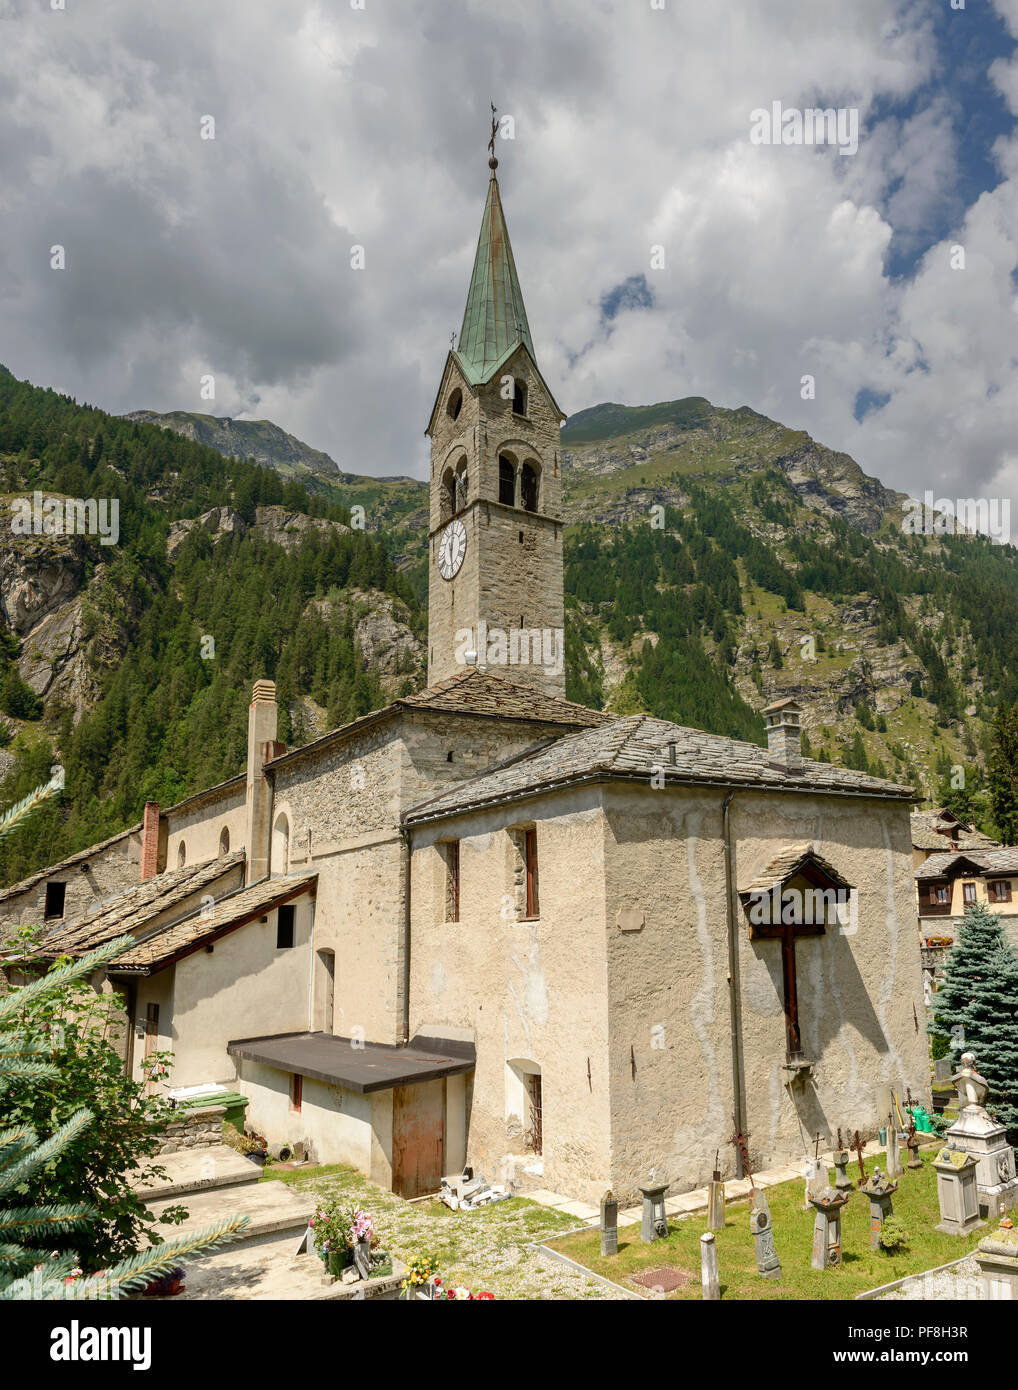 Blick auf Saint Giovanni Battista Kirche Apsis Seite, Schuß an einem hellen Sommertag in Gressoney Saint Jean, Lys Valley, Aosta, Italien Stockfoto